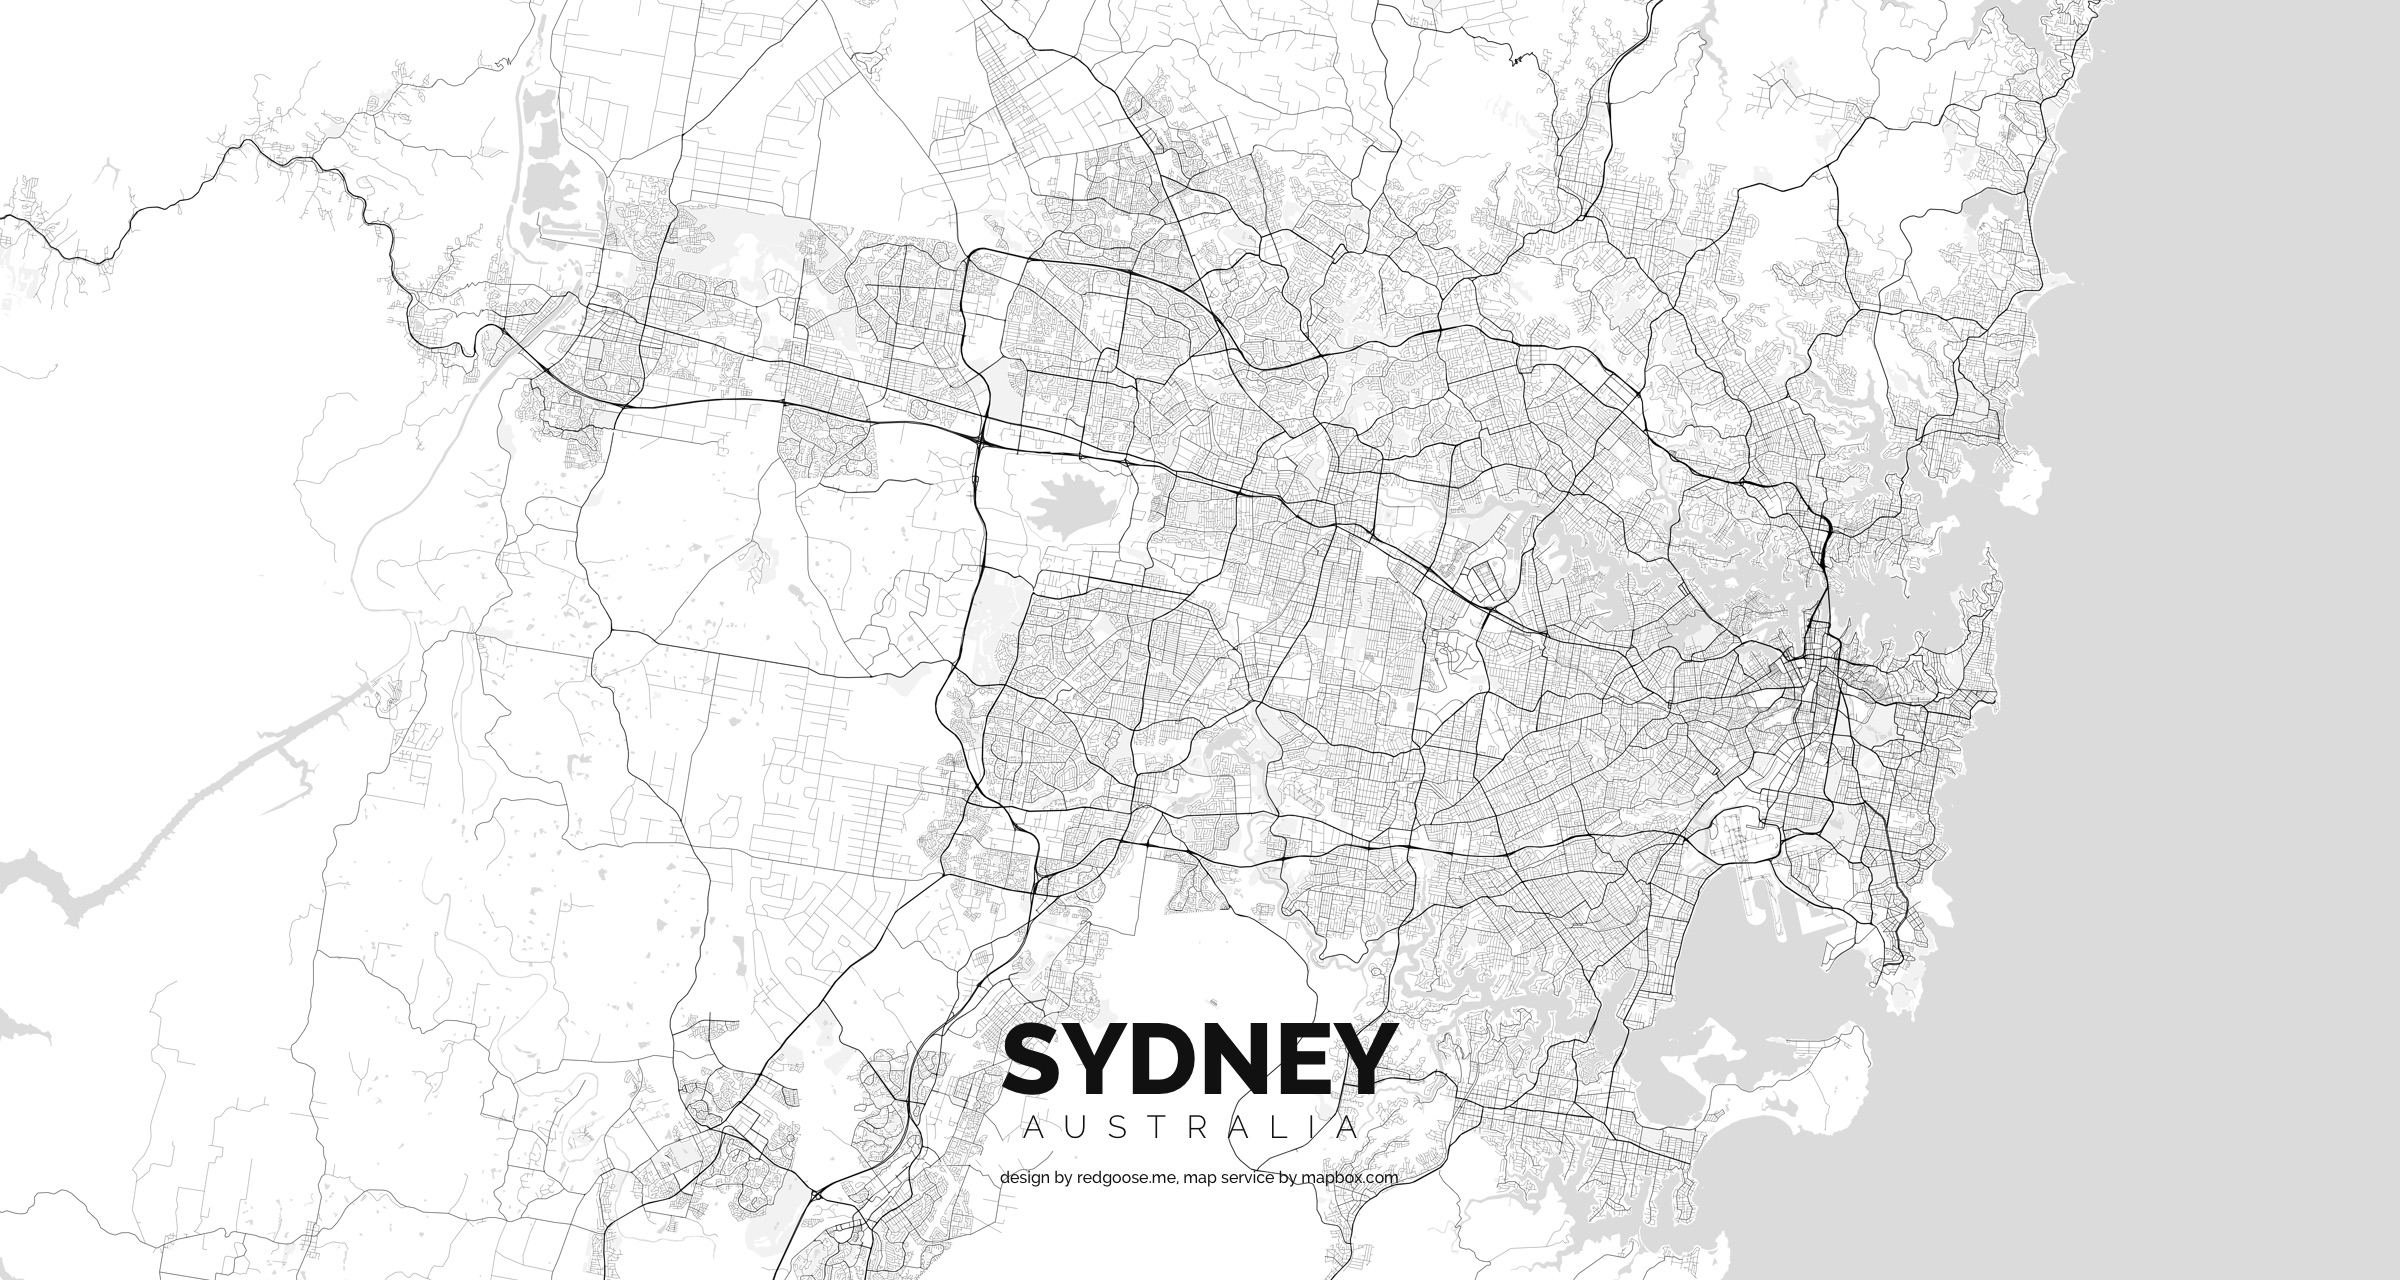 Australia_-_Sydney.jpg